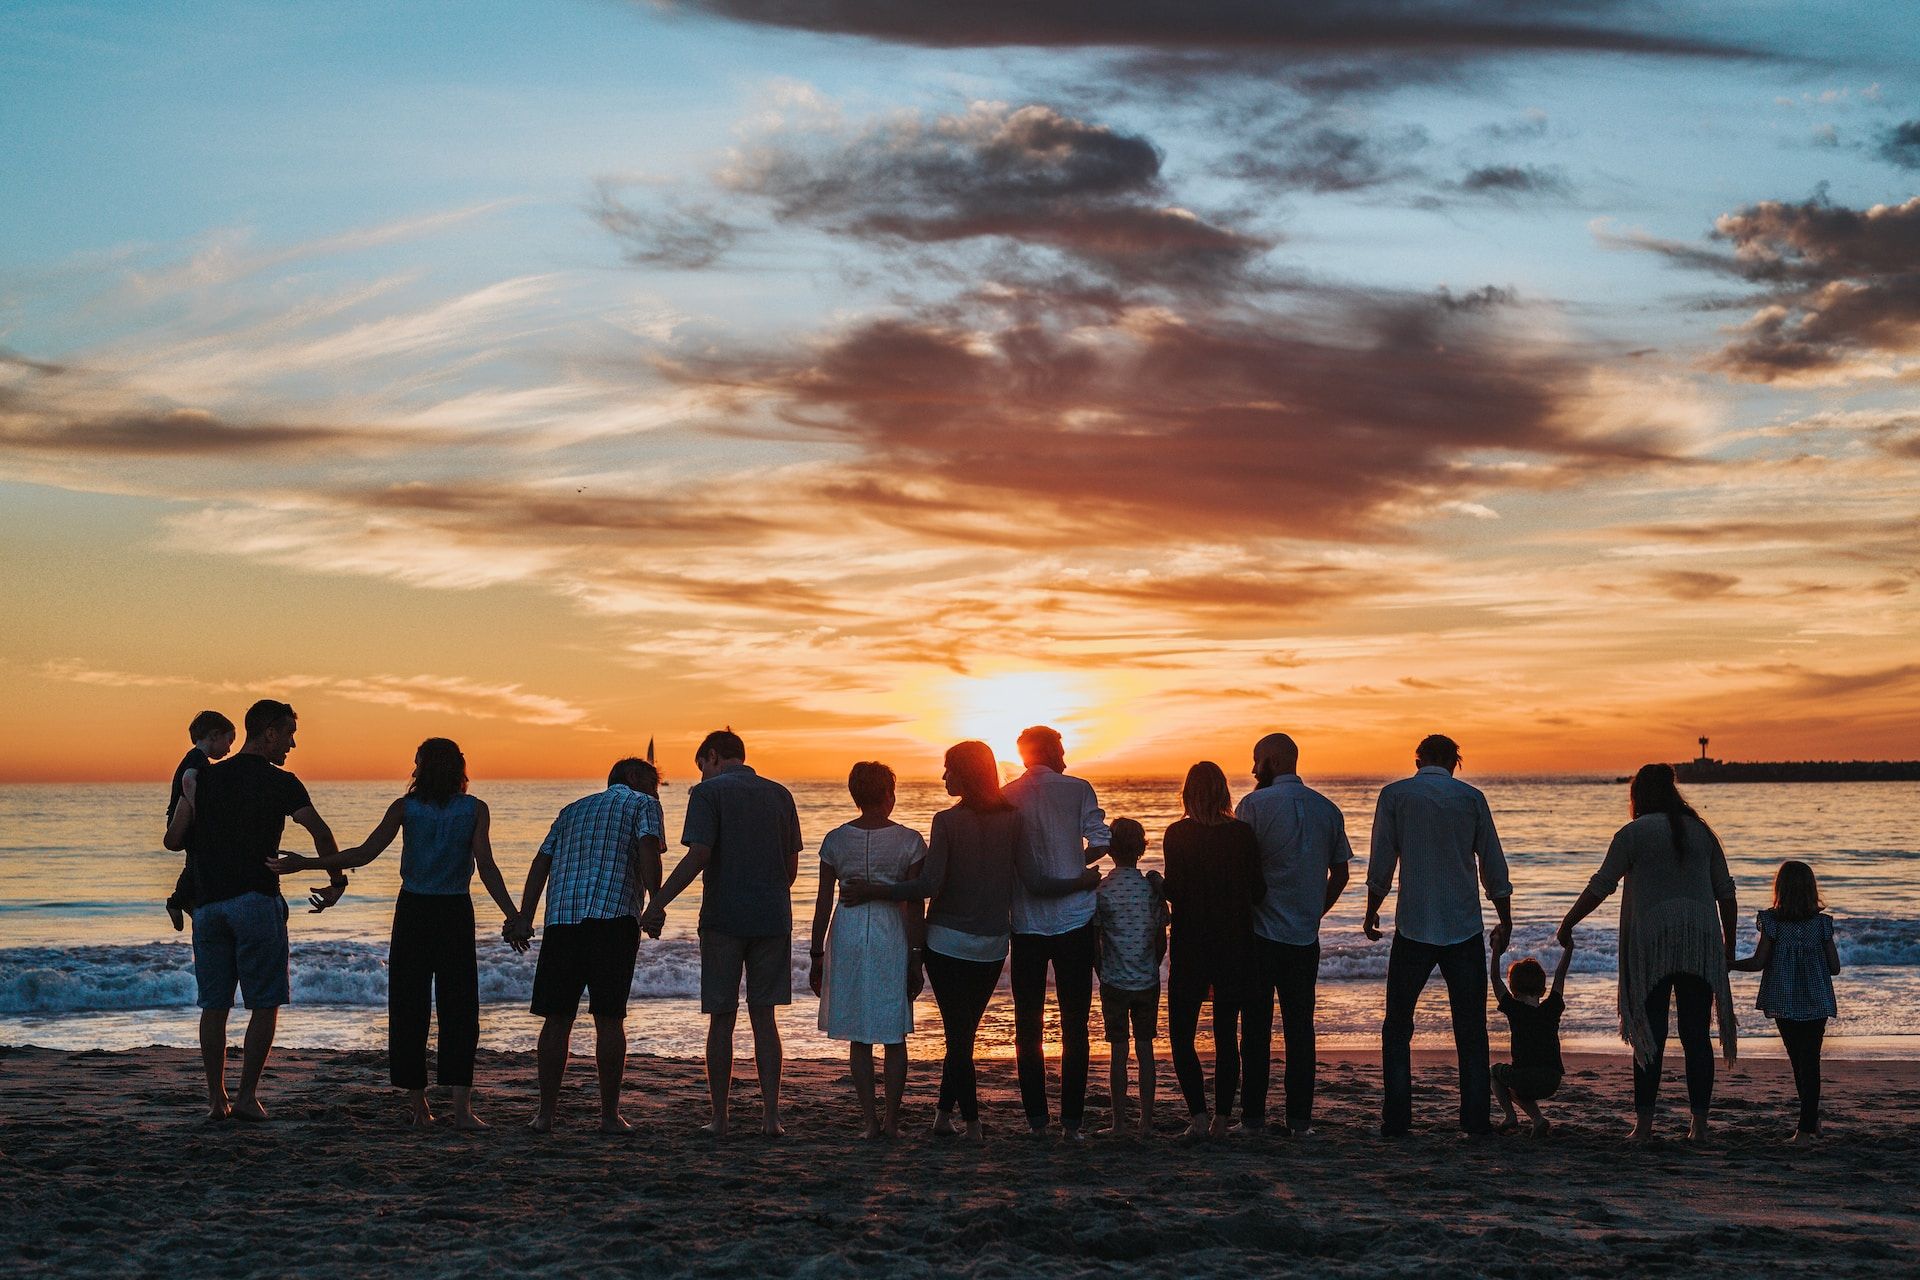 un groupe de personnes d'âges divers se tenant par la main face au soleil couchant sur la mer - Photo by Tyler Nix on https://unsplash.com/photos/V3dHmb1MOXM